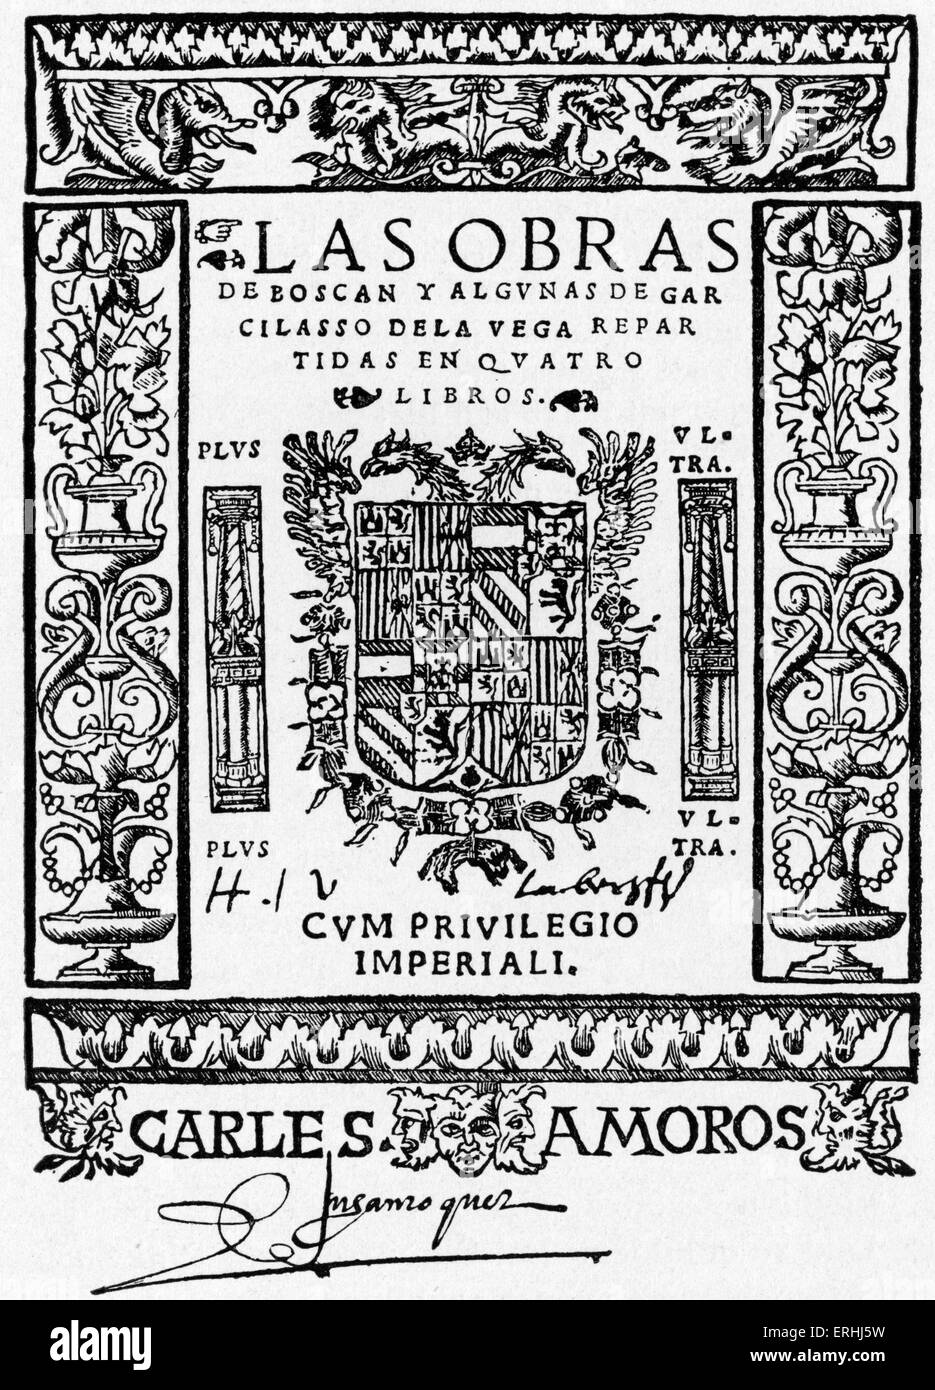 Juan Boscan Almogaver et Garcilaso de la Vega - page de titre de la première édition de la marche des poètes espagnols. 1490 - 1542. Avec Banque D'Images